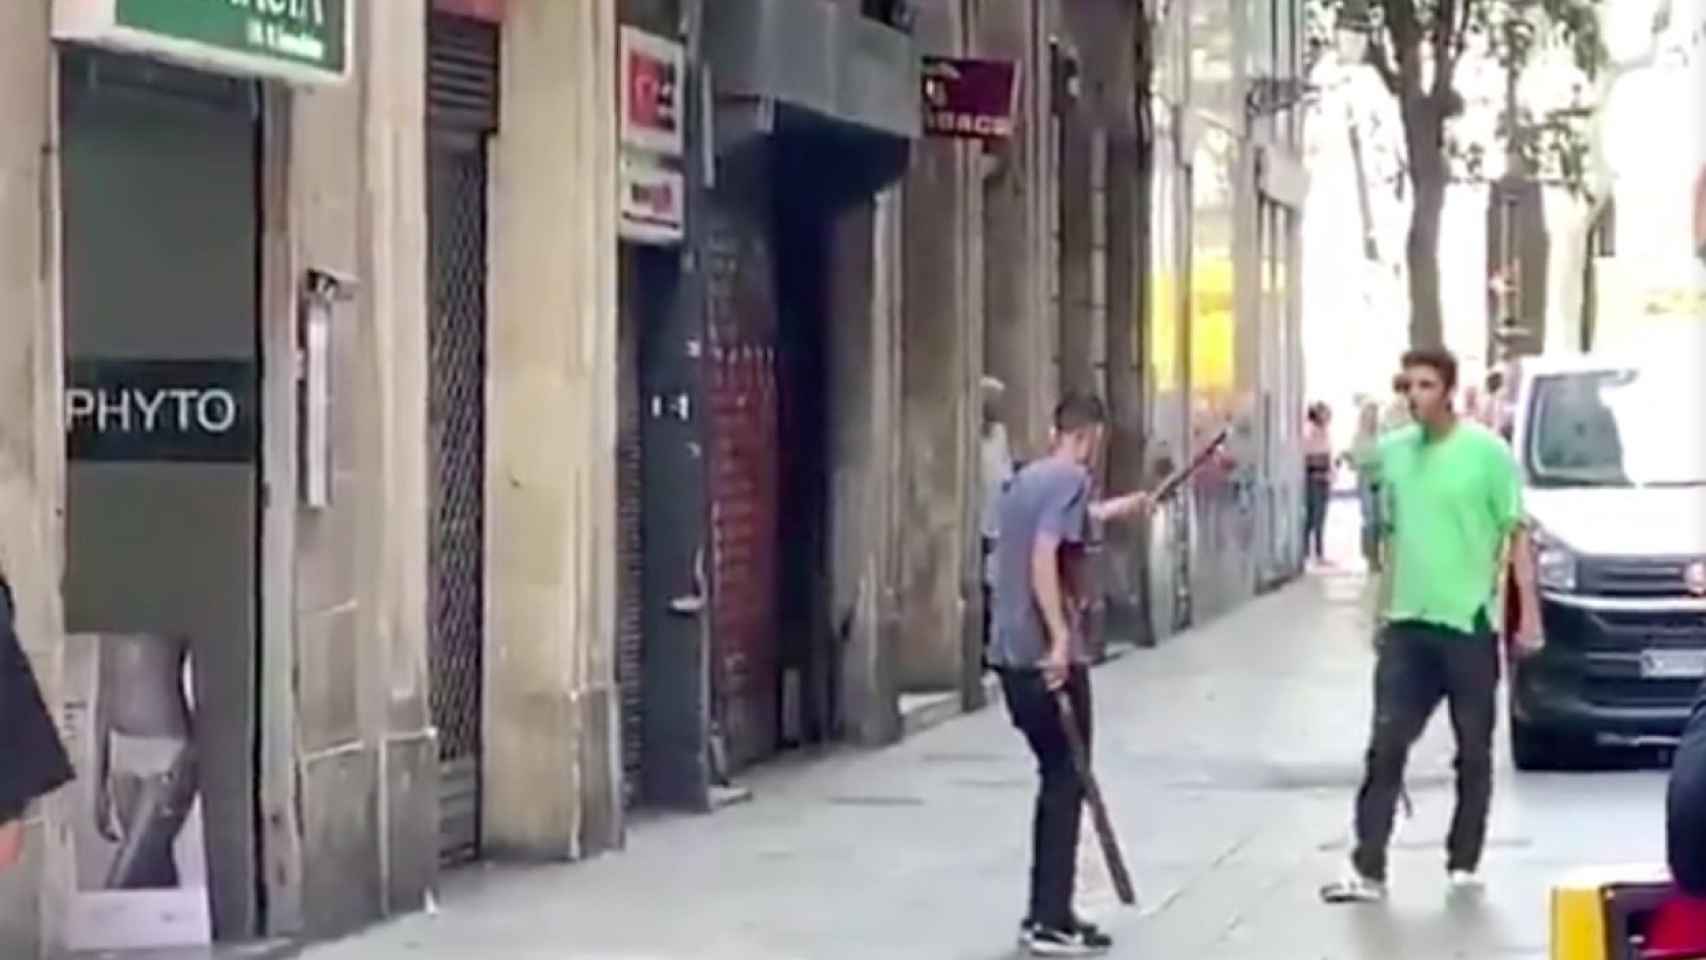 Un joven amenaza a otro con barras de hierro en Barcelona